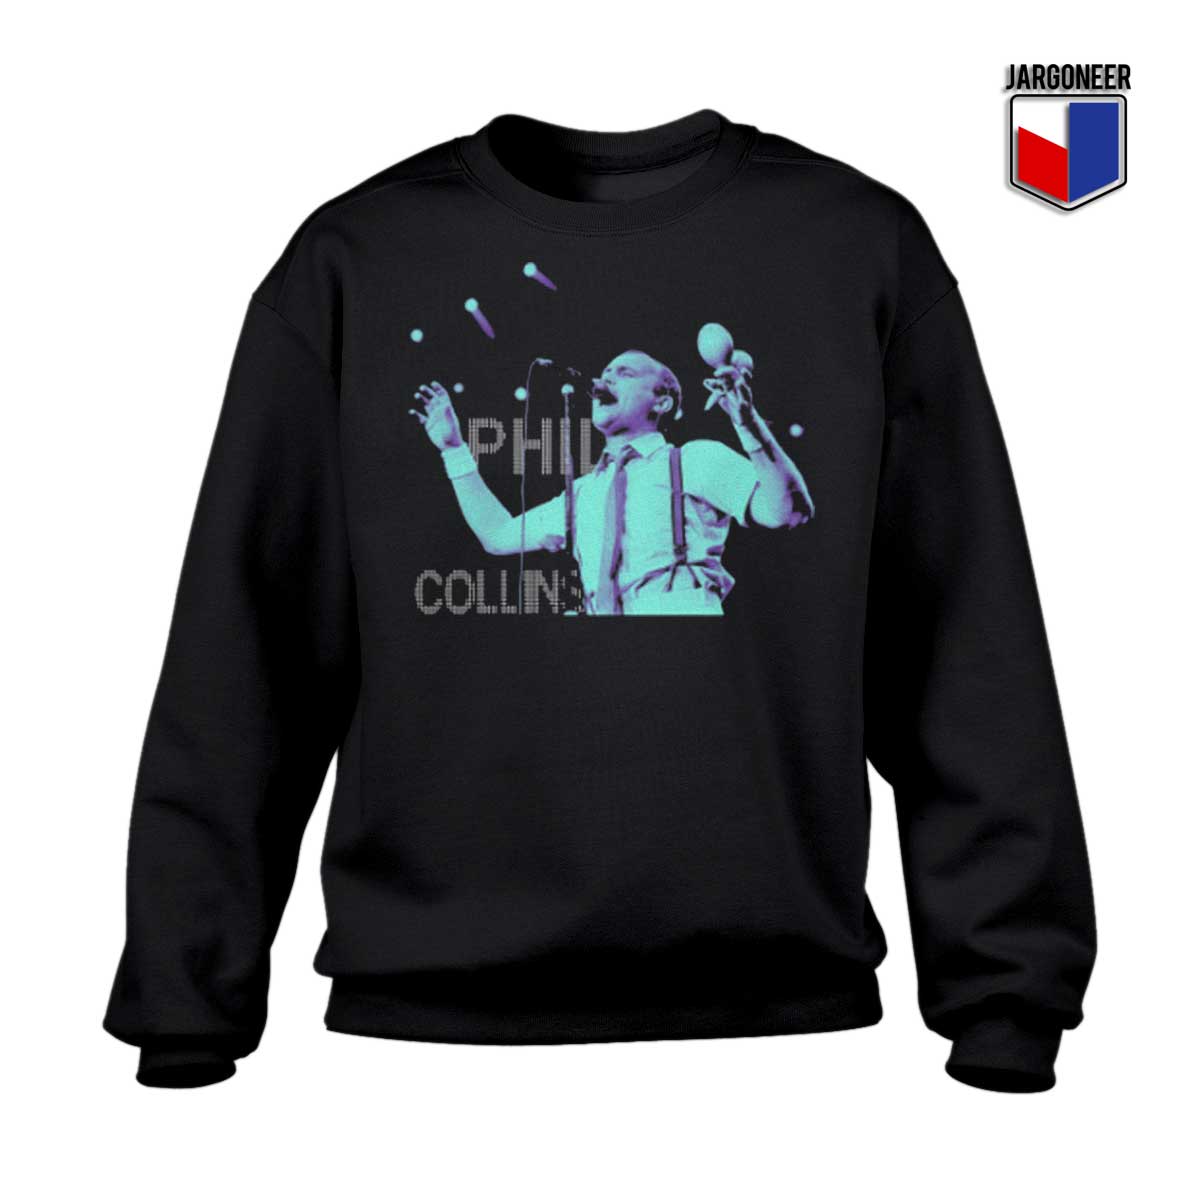 Phil Collins Sweatshirt - Shop Unique Graphic Cool Shirt Designs